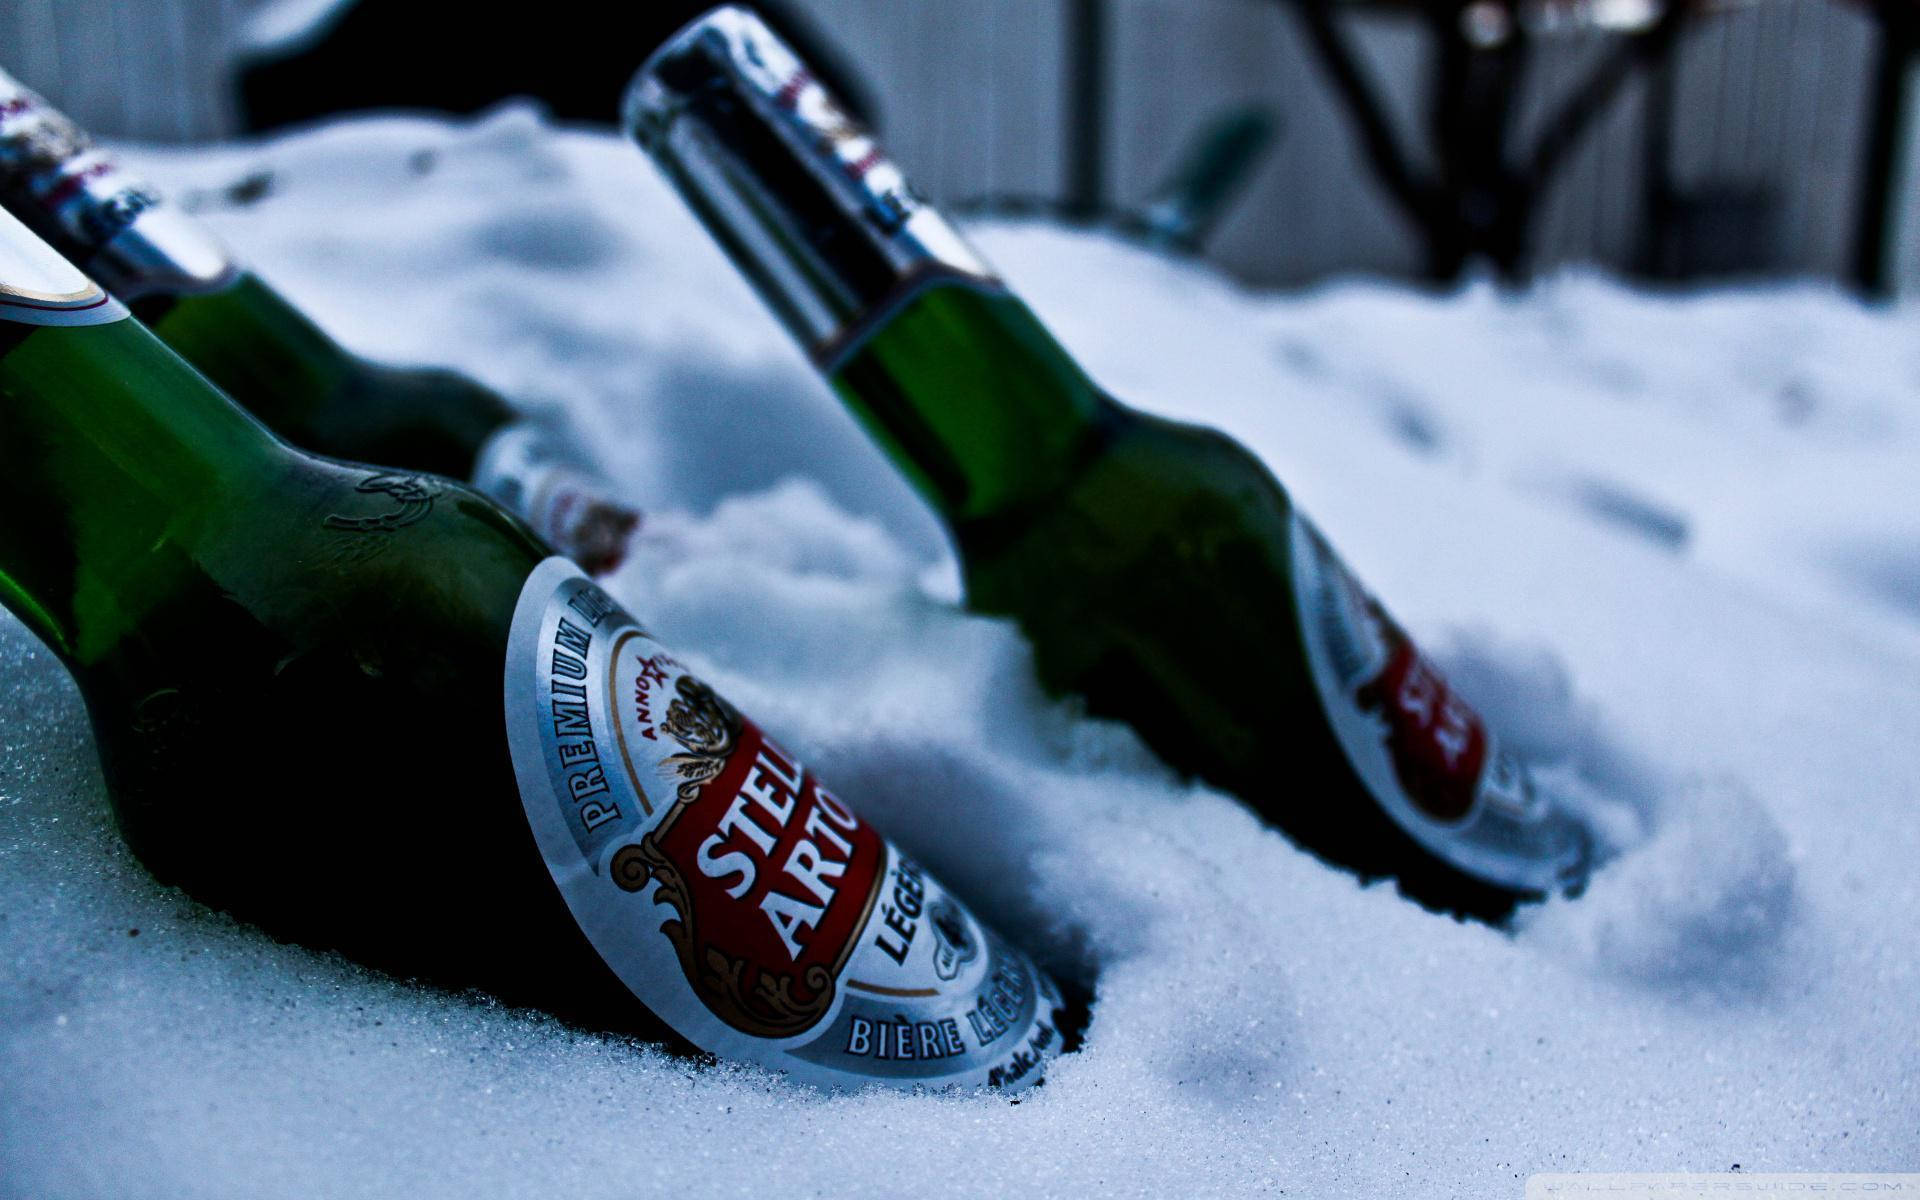 Stella Artois øl ude i det kolde med et skandinavisk udseende. Wallpaper